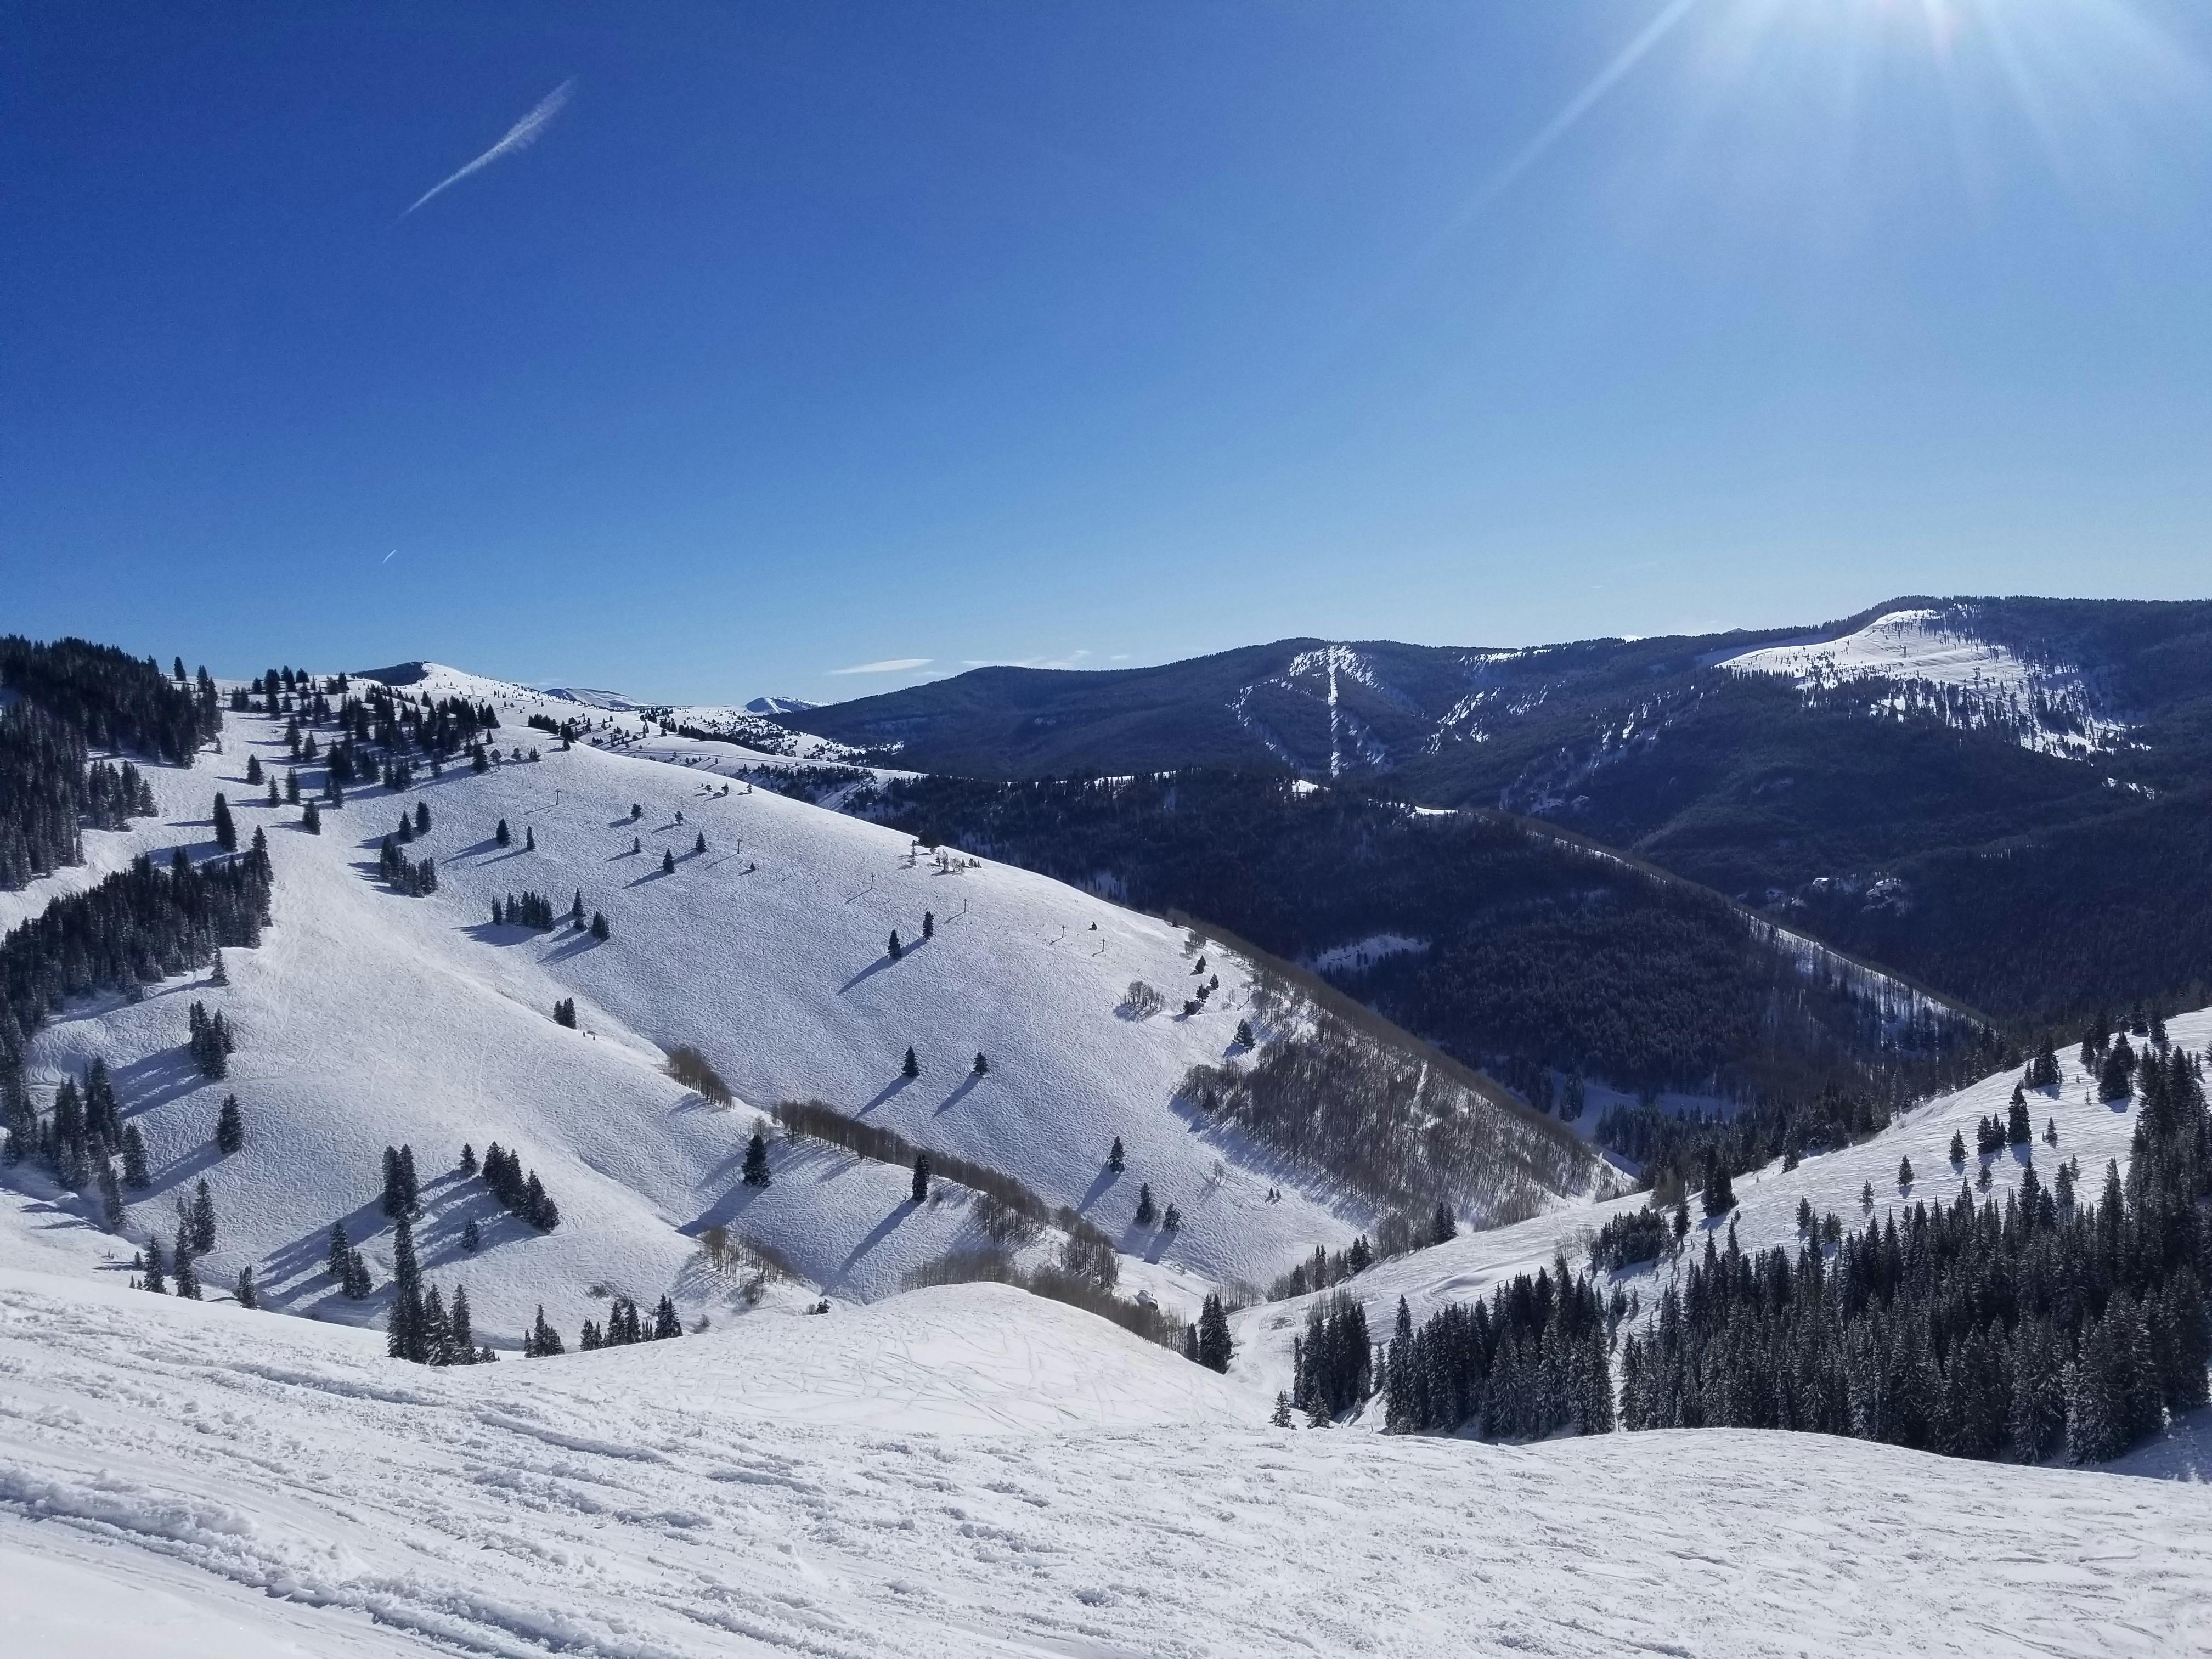 Mountain view of snowy mountains on a ski resort run.